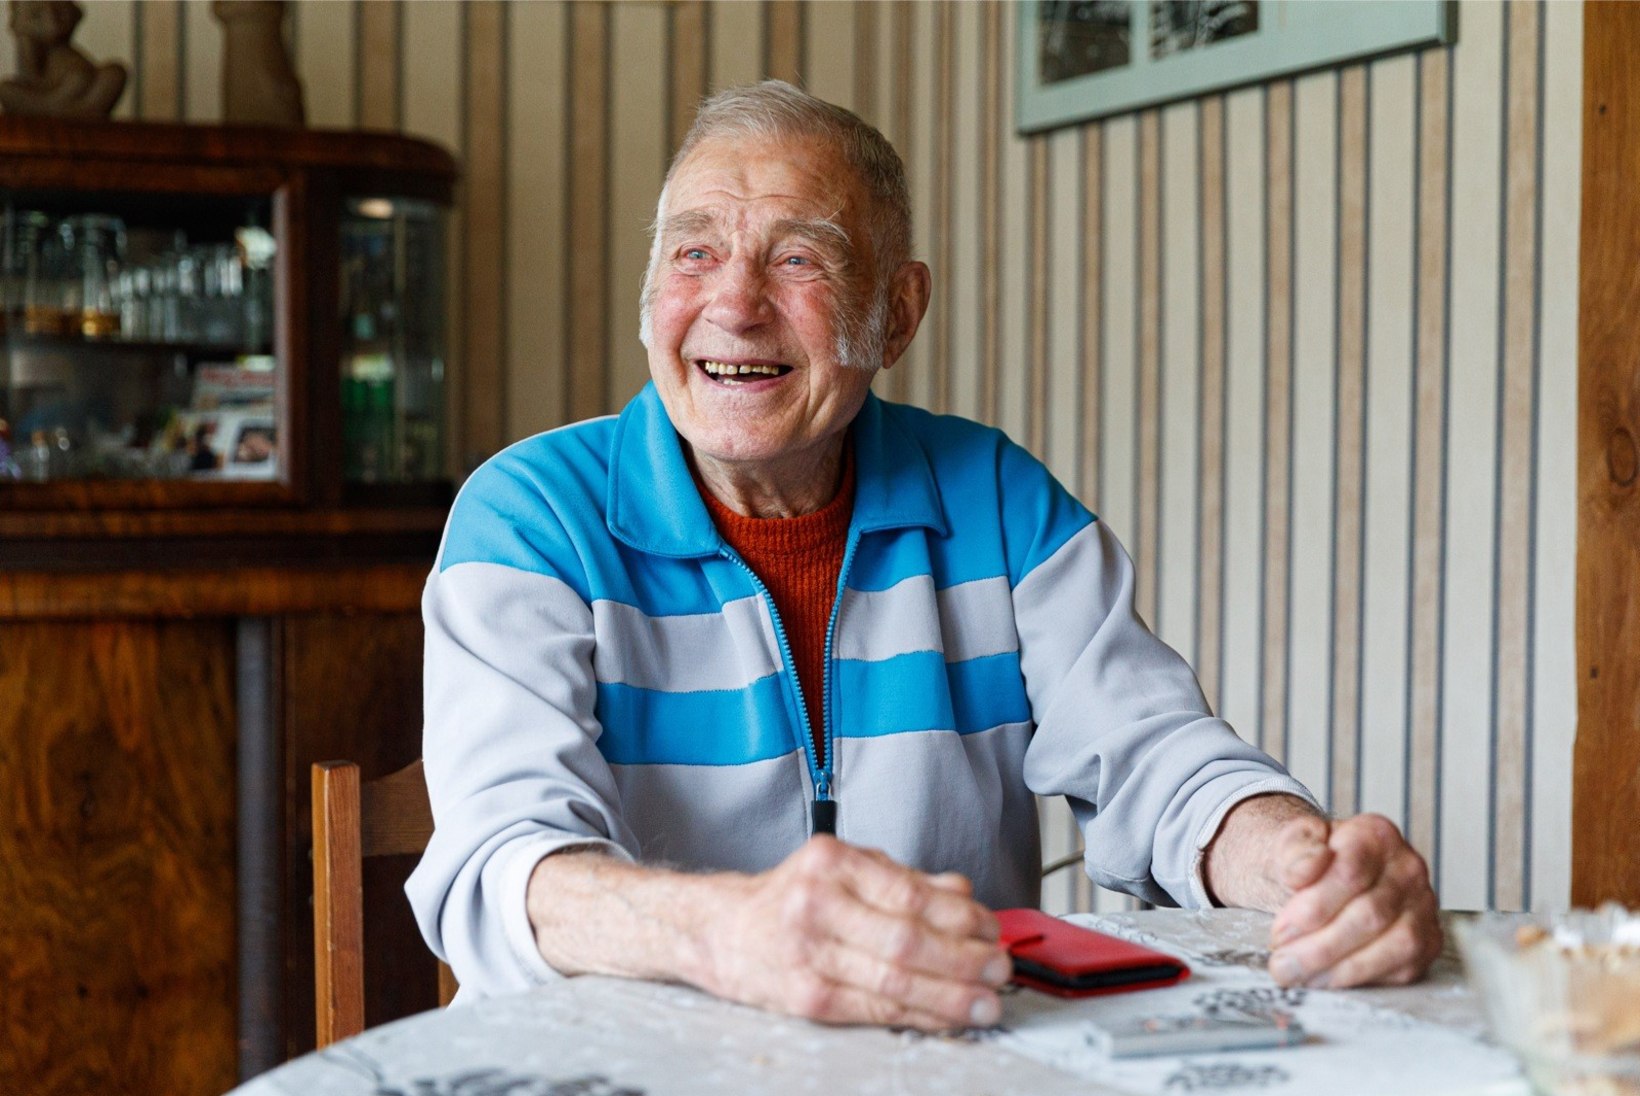 Hooldushaiglas viibiv 90aastane Uno Loop: paranen iga päevaga, aga väga aeglaselt